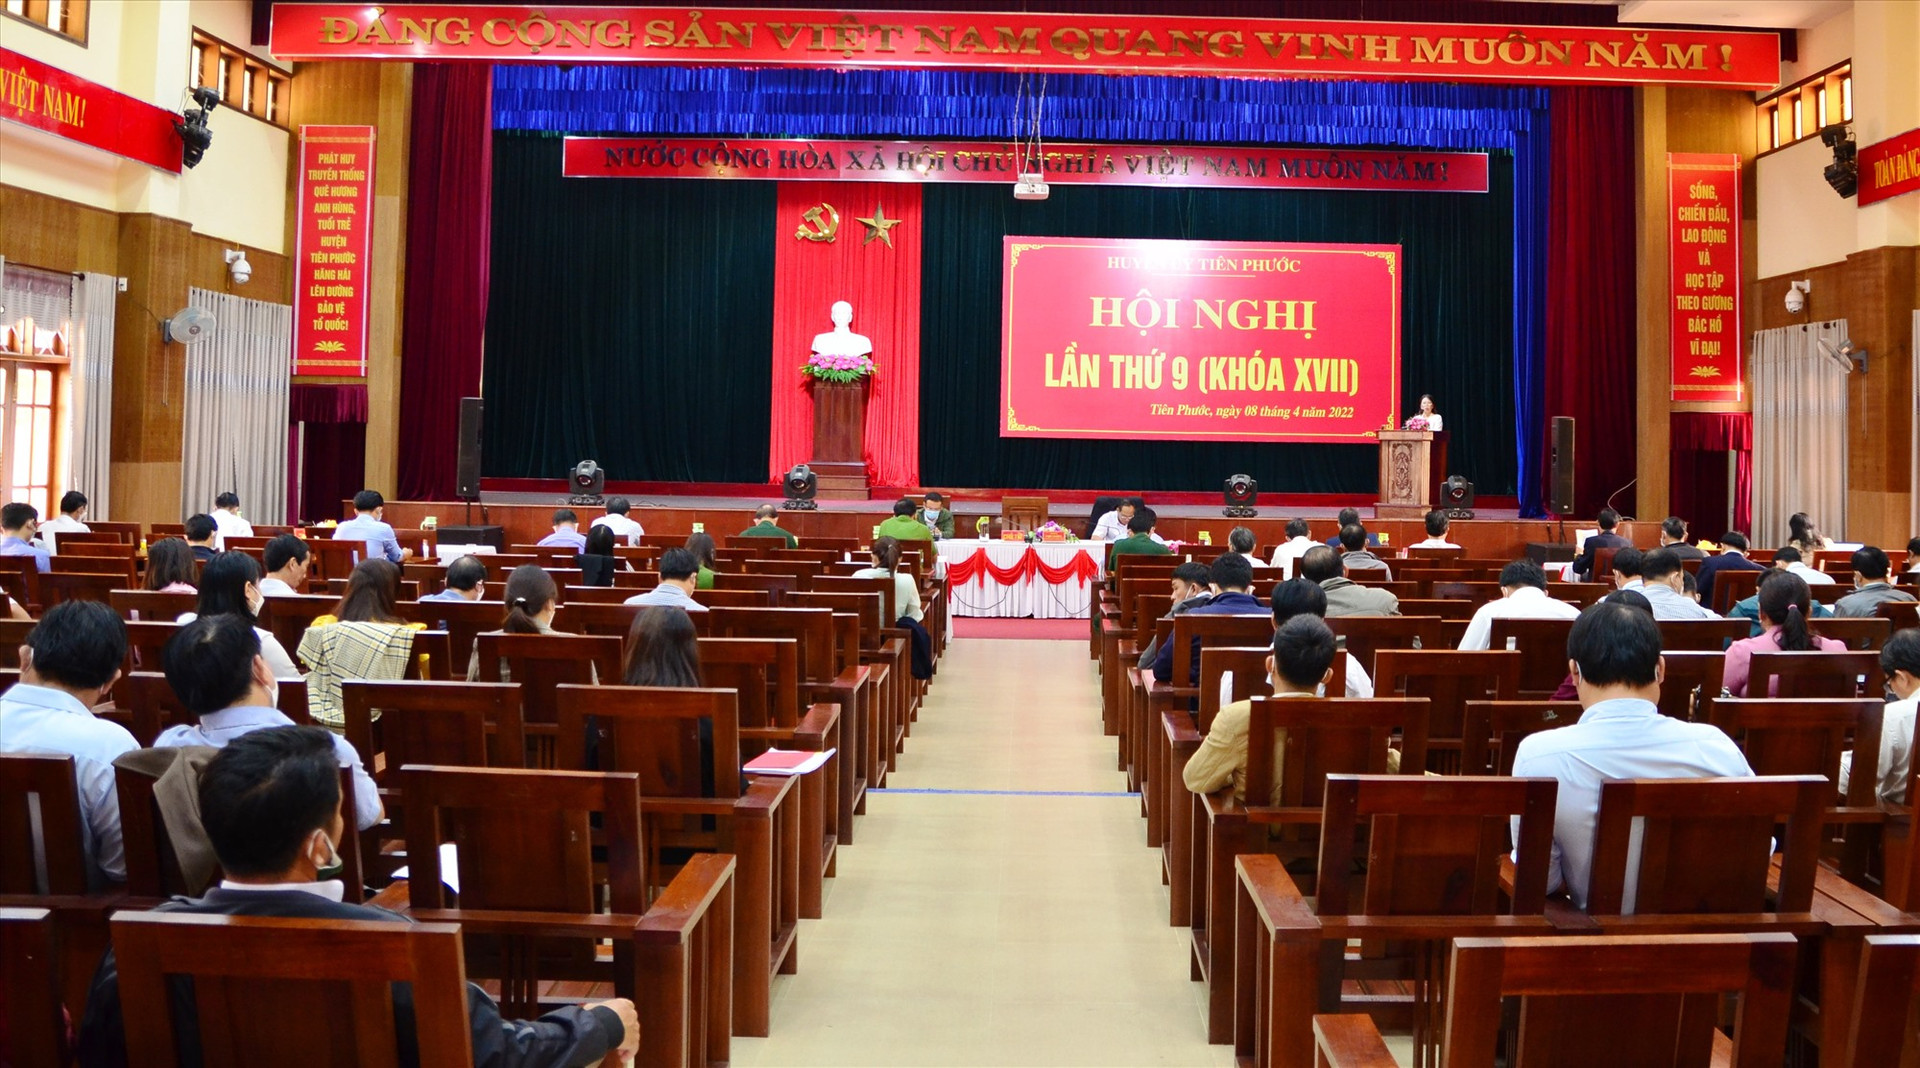 Huyện ủy Tiên Phước tổ chức hội nghị lần thứ 9, (khóa XVII) nhằm sơ kết 3 tháng đầu năm. Ảnh: NGUYỄN HƯNG